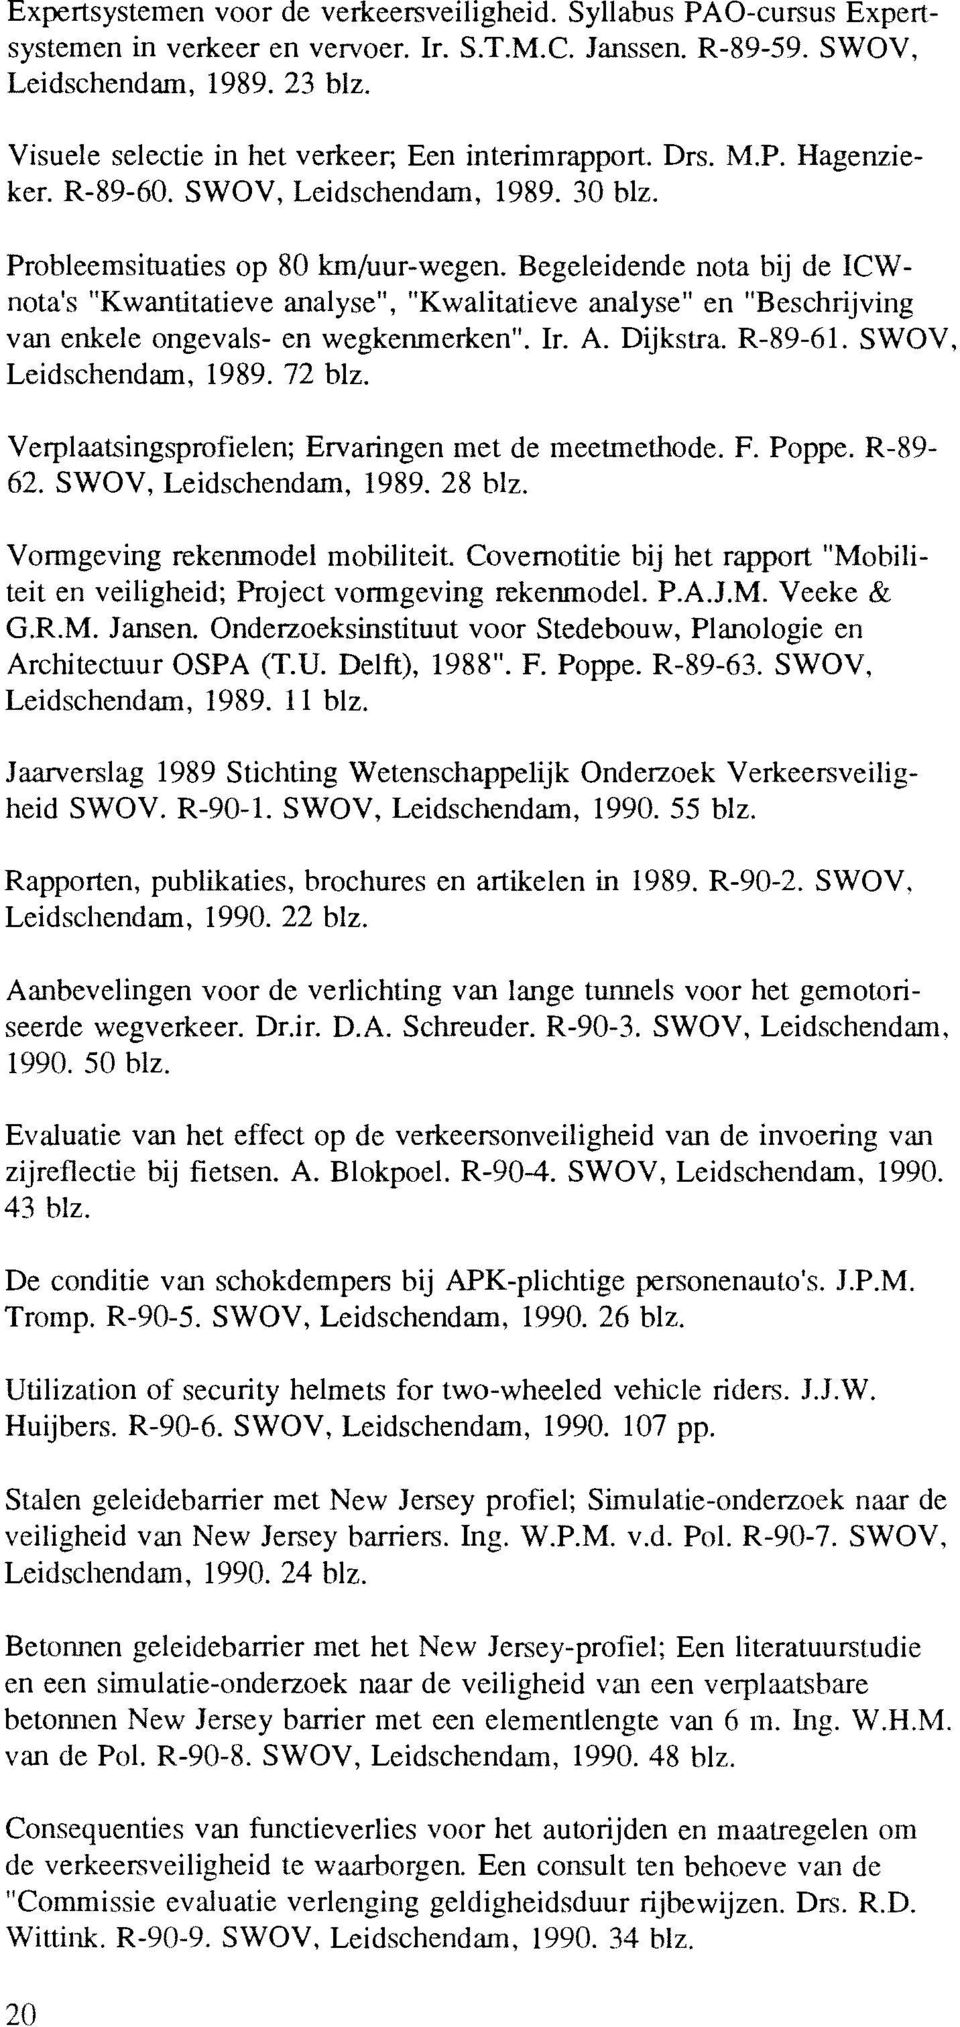 Begeleidende nota bij de ICWnota's "Kwantitatieve analyse", "Kwalitatieve analyse" en "Beschrijving van enkele ongevals- en wegkenmerken". Ir. A. Dijkstra. R-89-61. SWOV, Leidschendam, 1989. 72 blz.